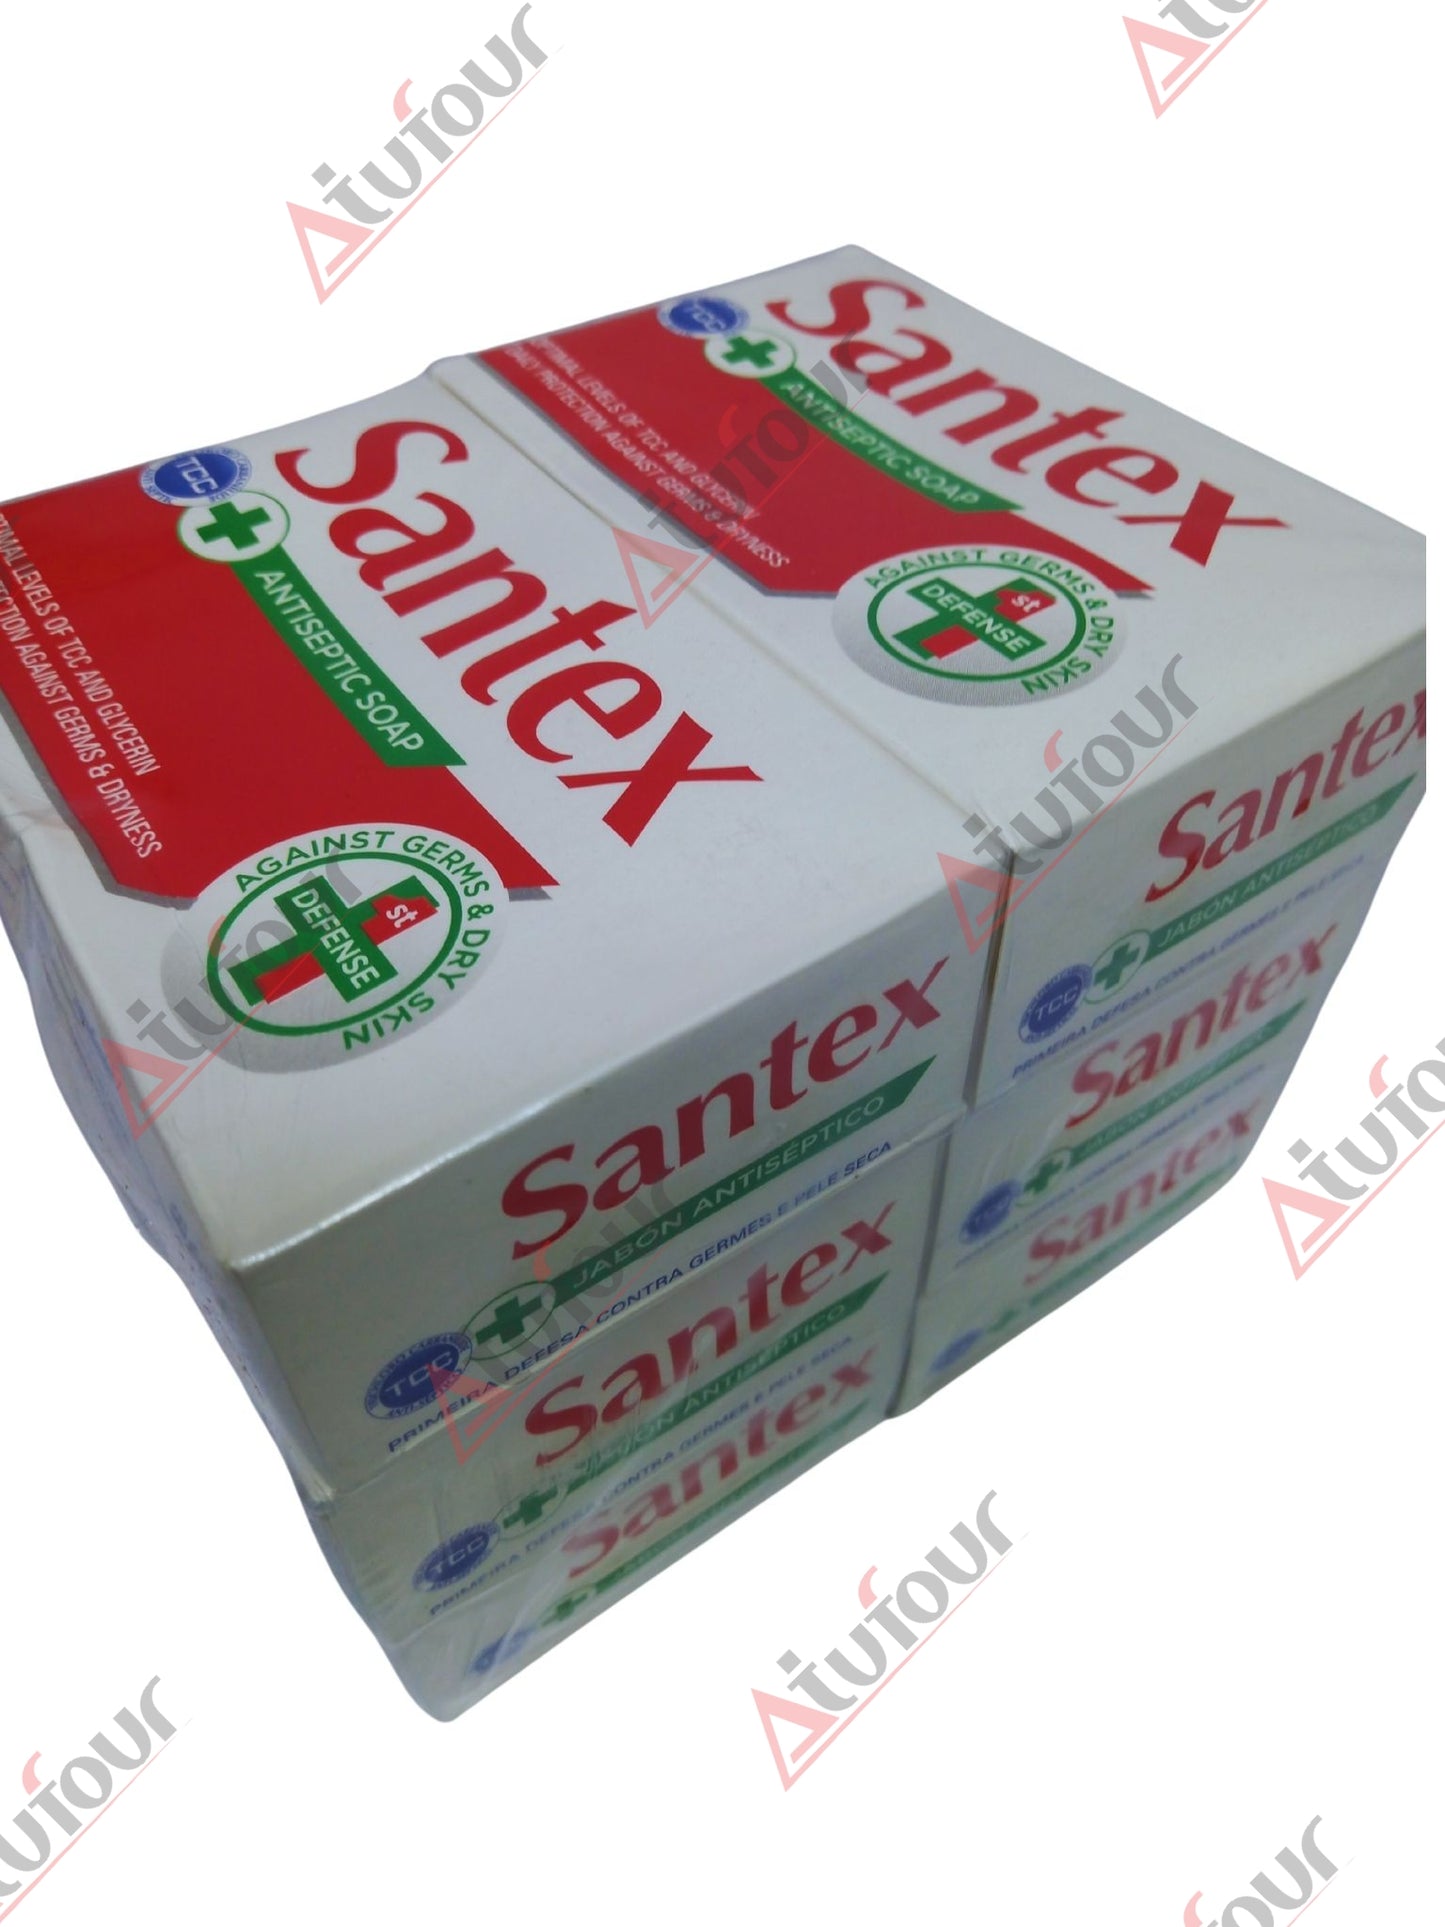 Santex Soap 200g